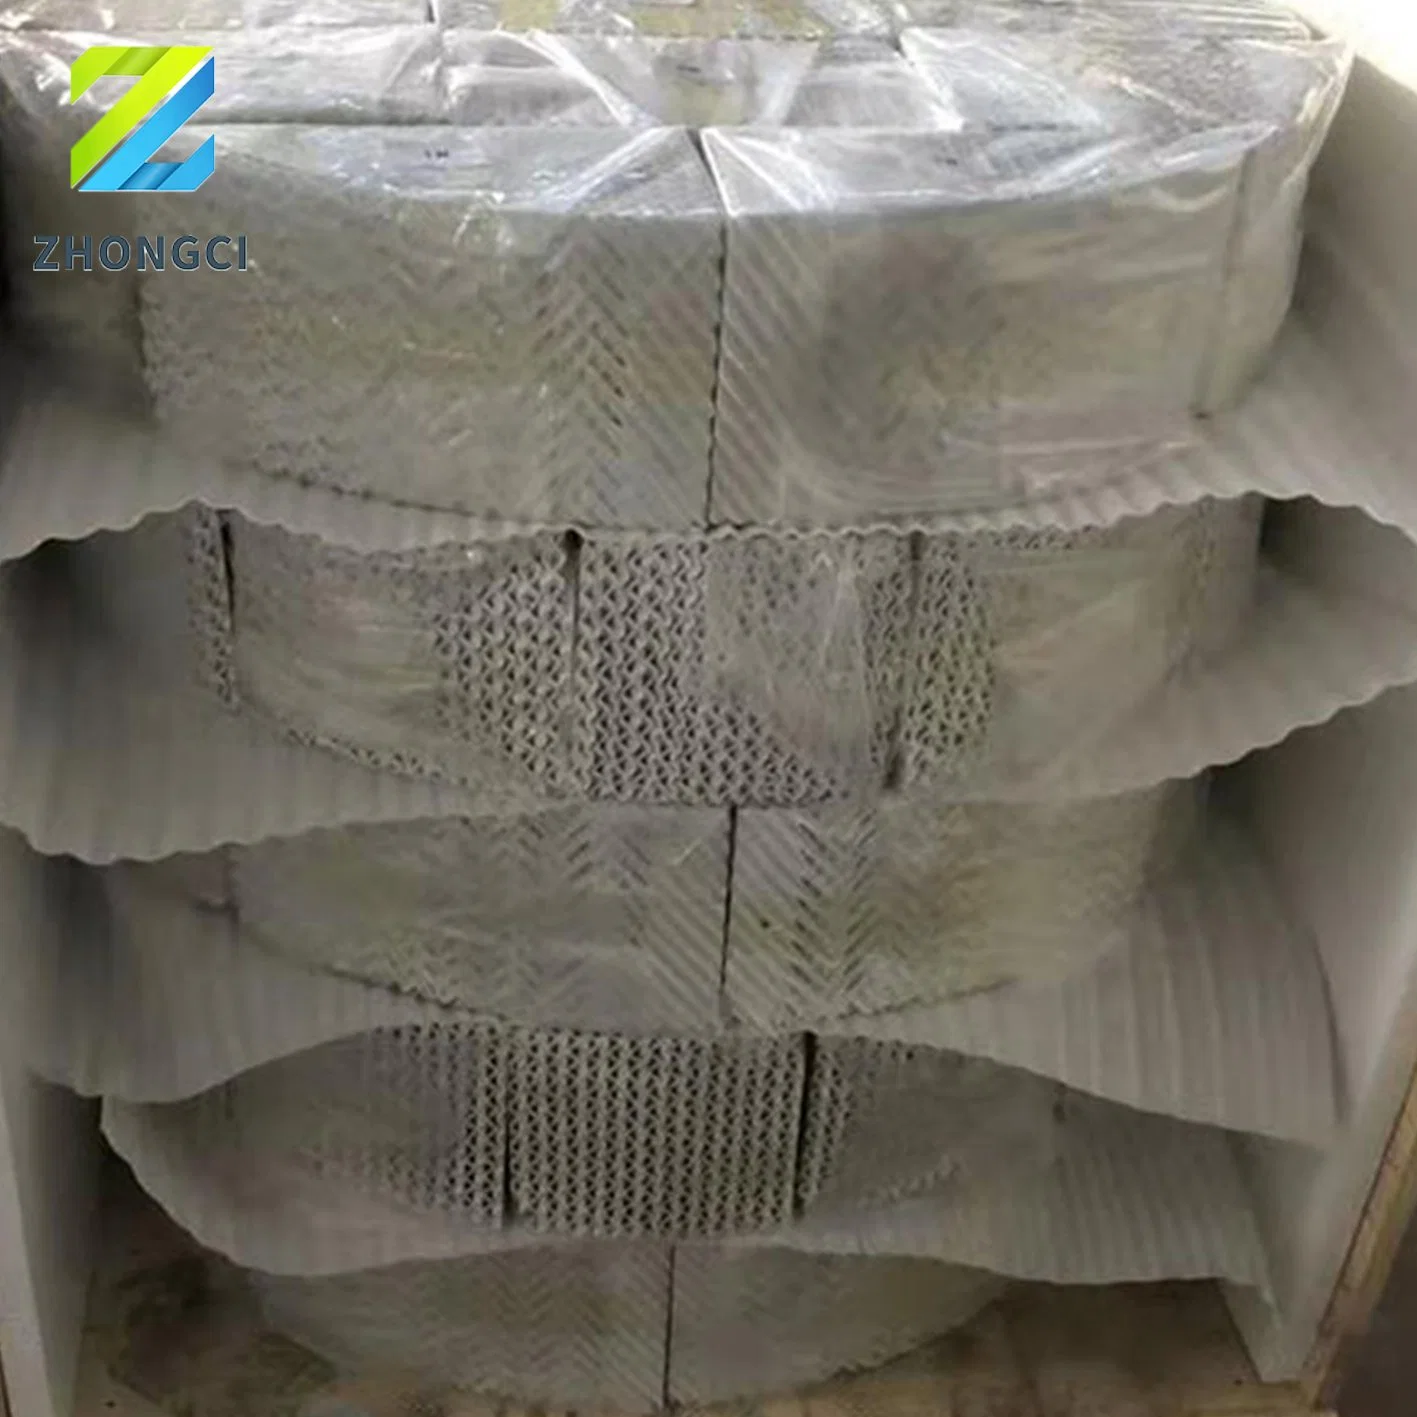 Zhongci 100y 125y 250y 350y Corrugated Alumina Ceramic Structured Packing Для химической колонны с поглощение серной кислоты